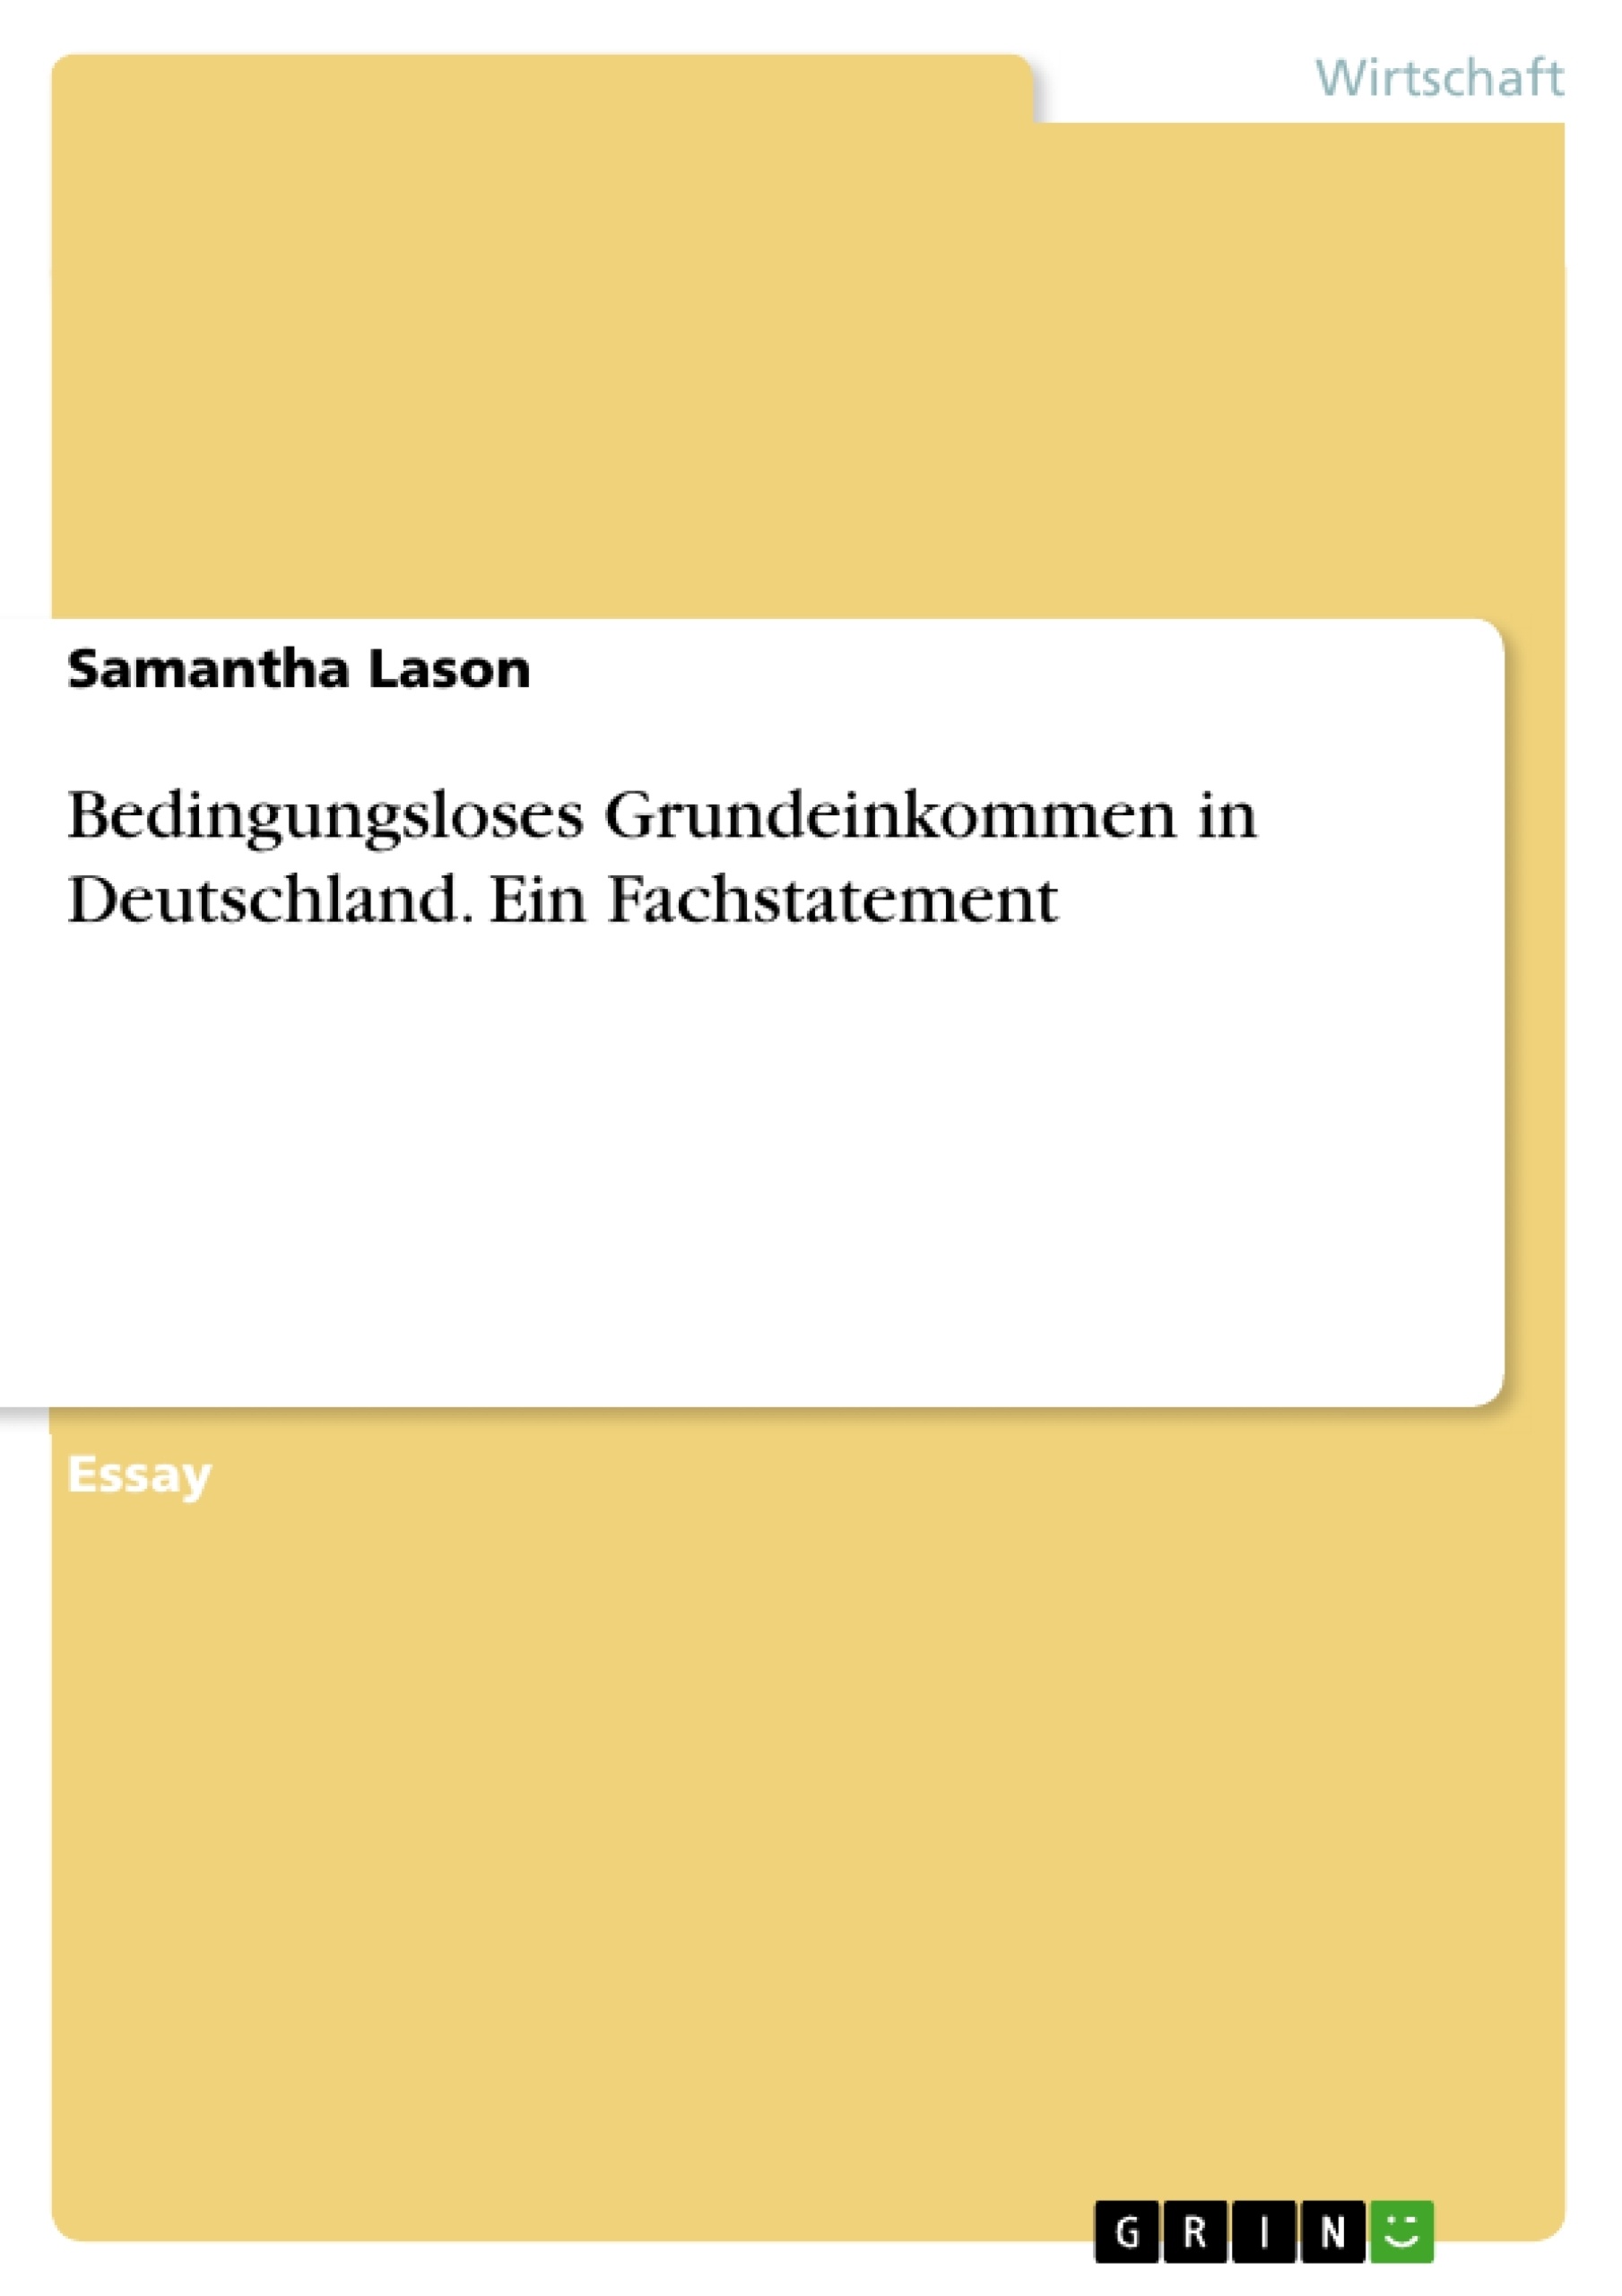 Título: Bedingungsloses Grundeinkommen in Deutschland. Ein Fachstatement